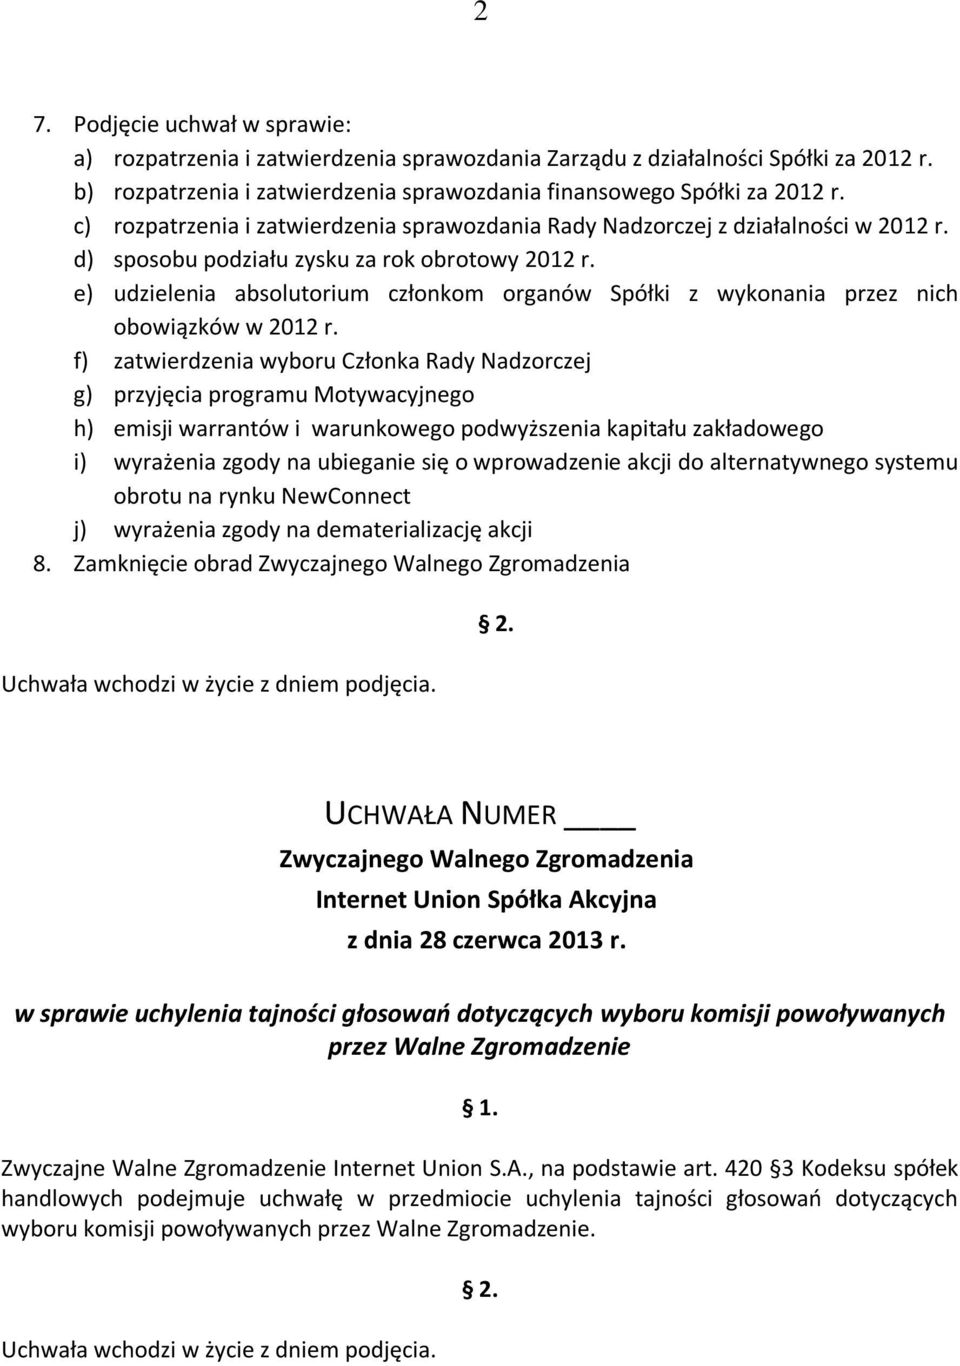 e) udzielenia absolutorium członkom organów Spółki z wykonania przez nich obowiązków w 2012 r.